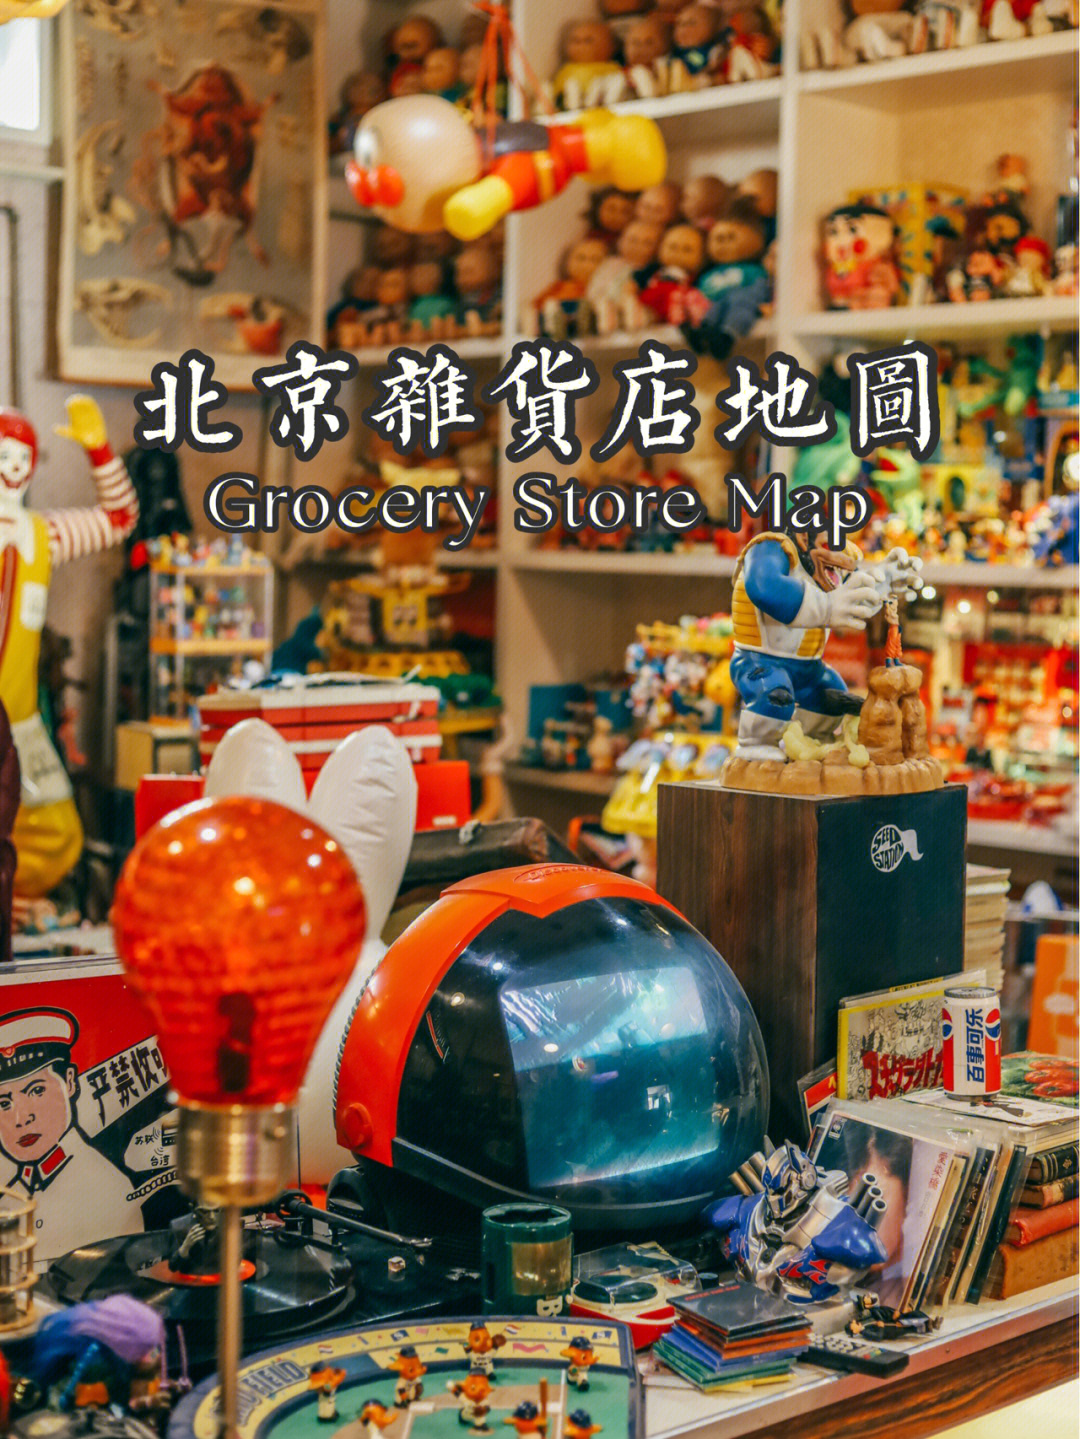 北京杂货店地图73家贩卖美好生活的杂货铺